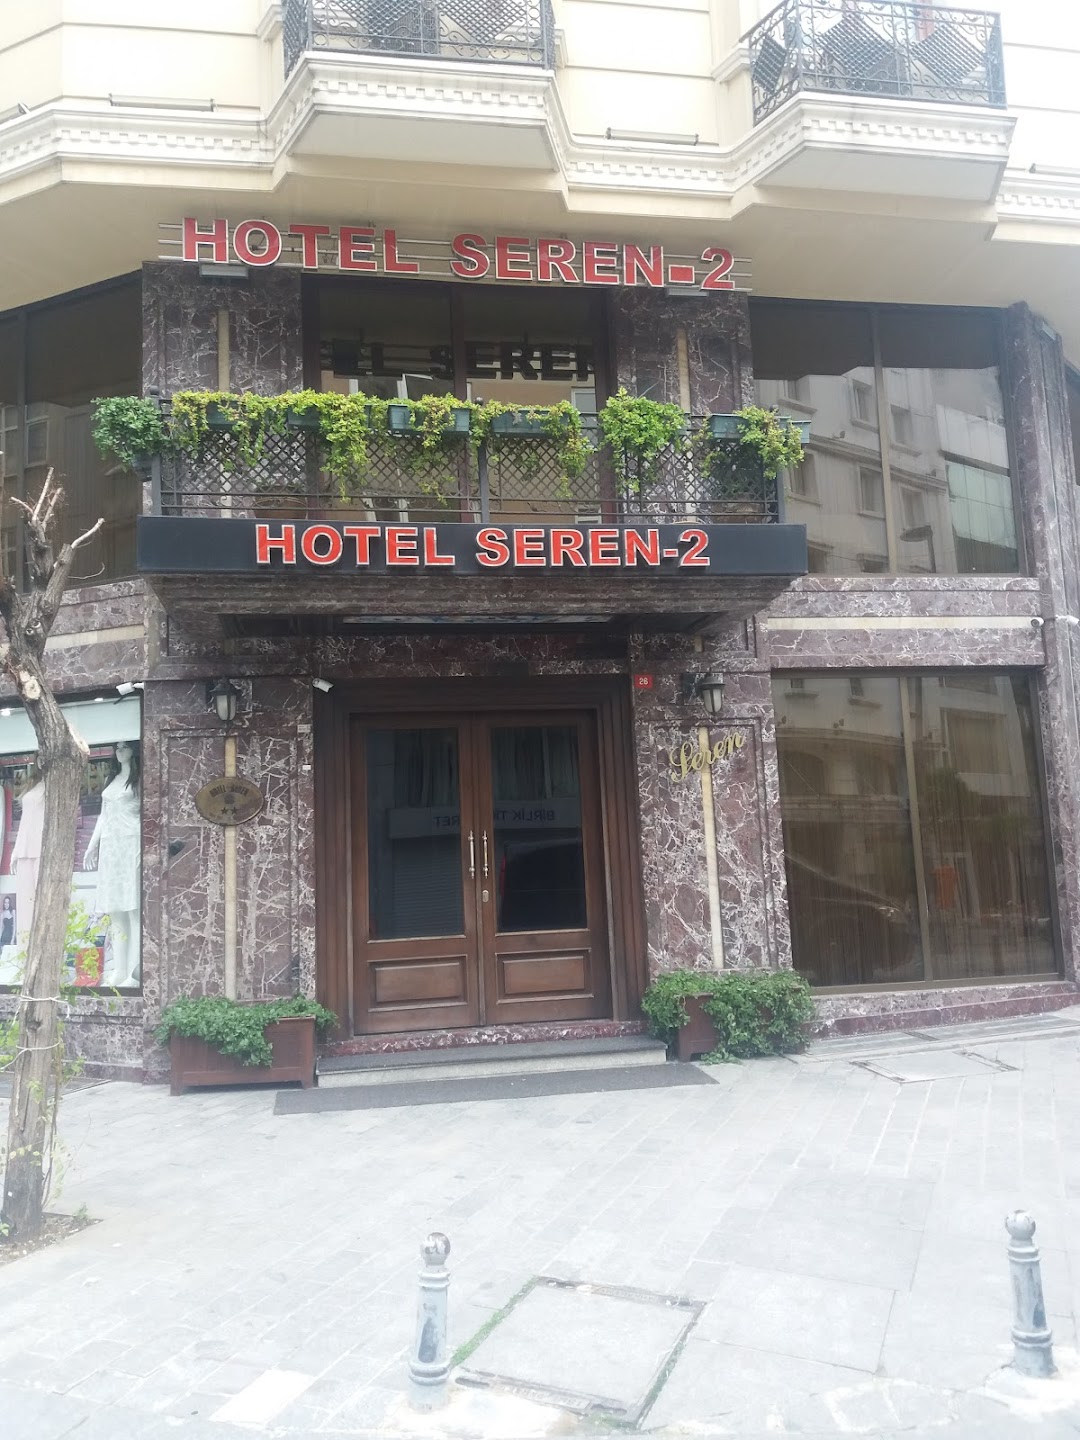 Hotel Seren-2